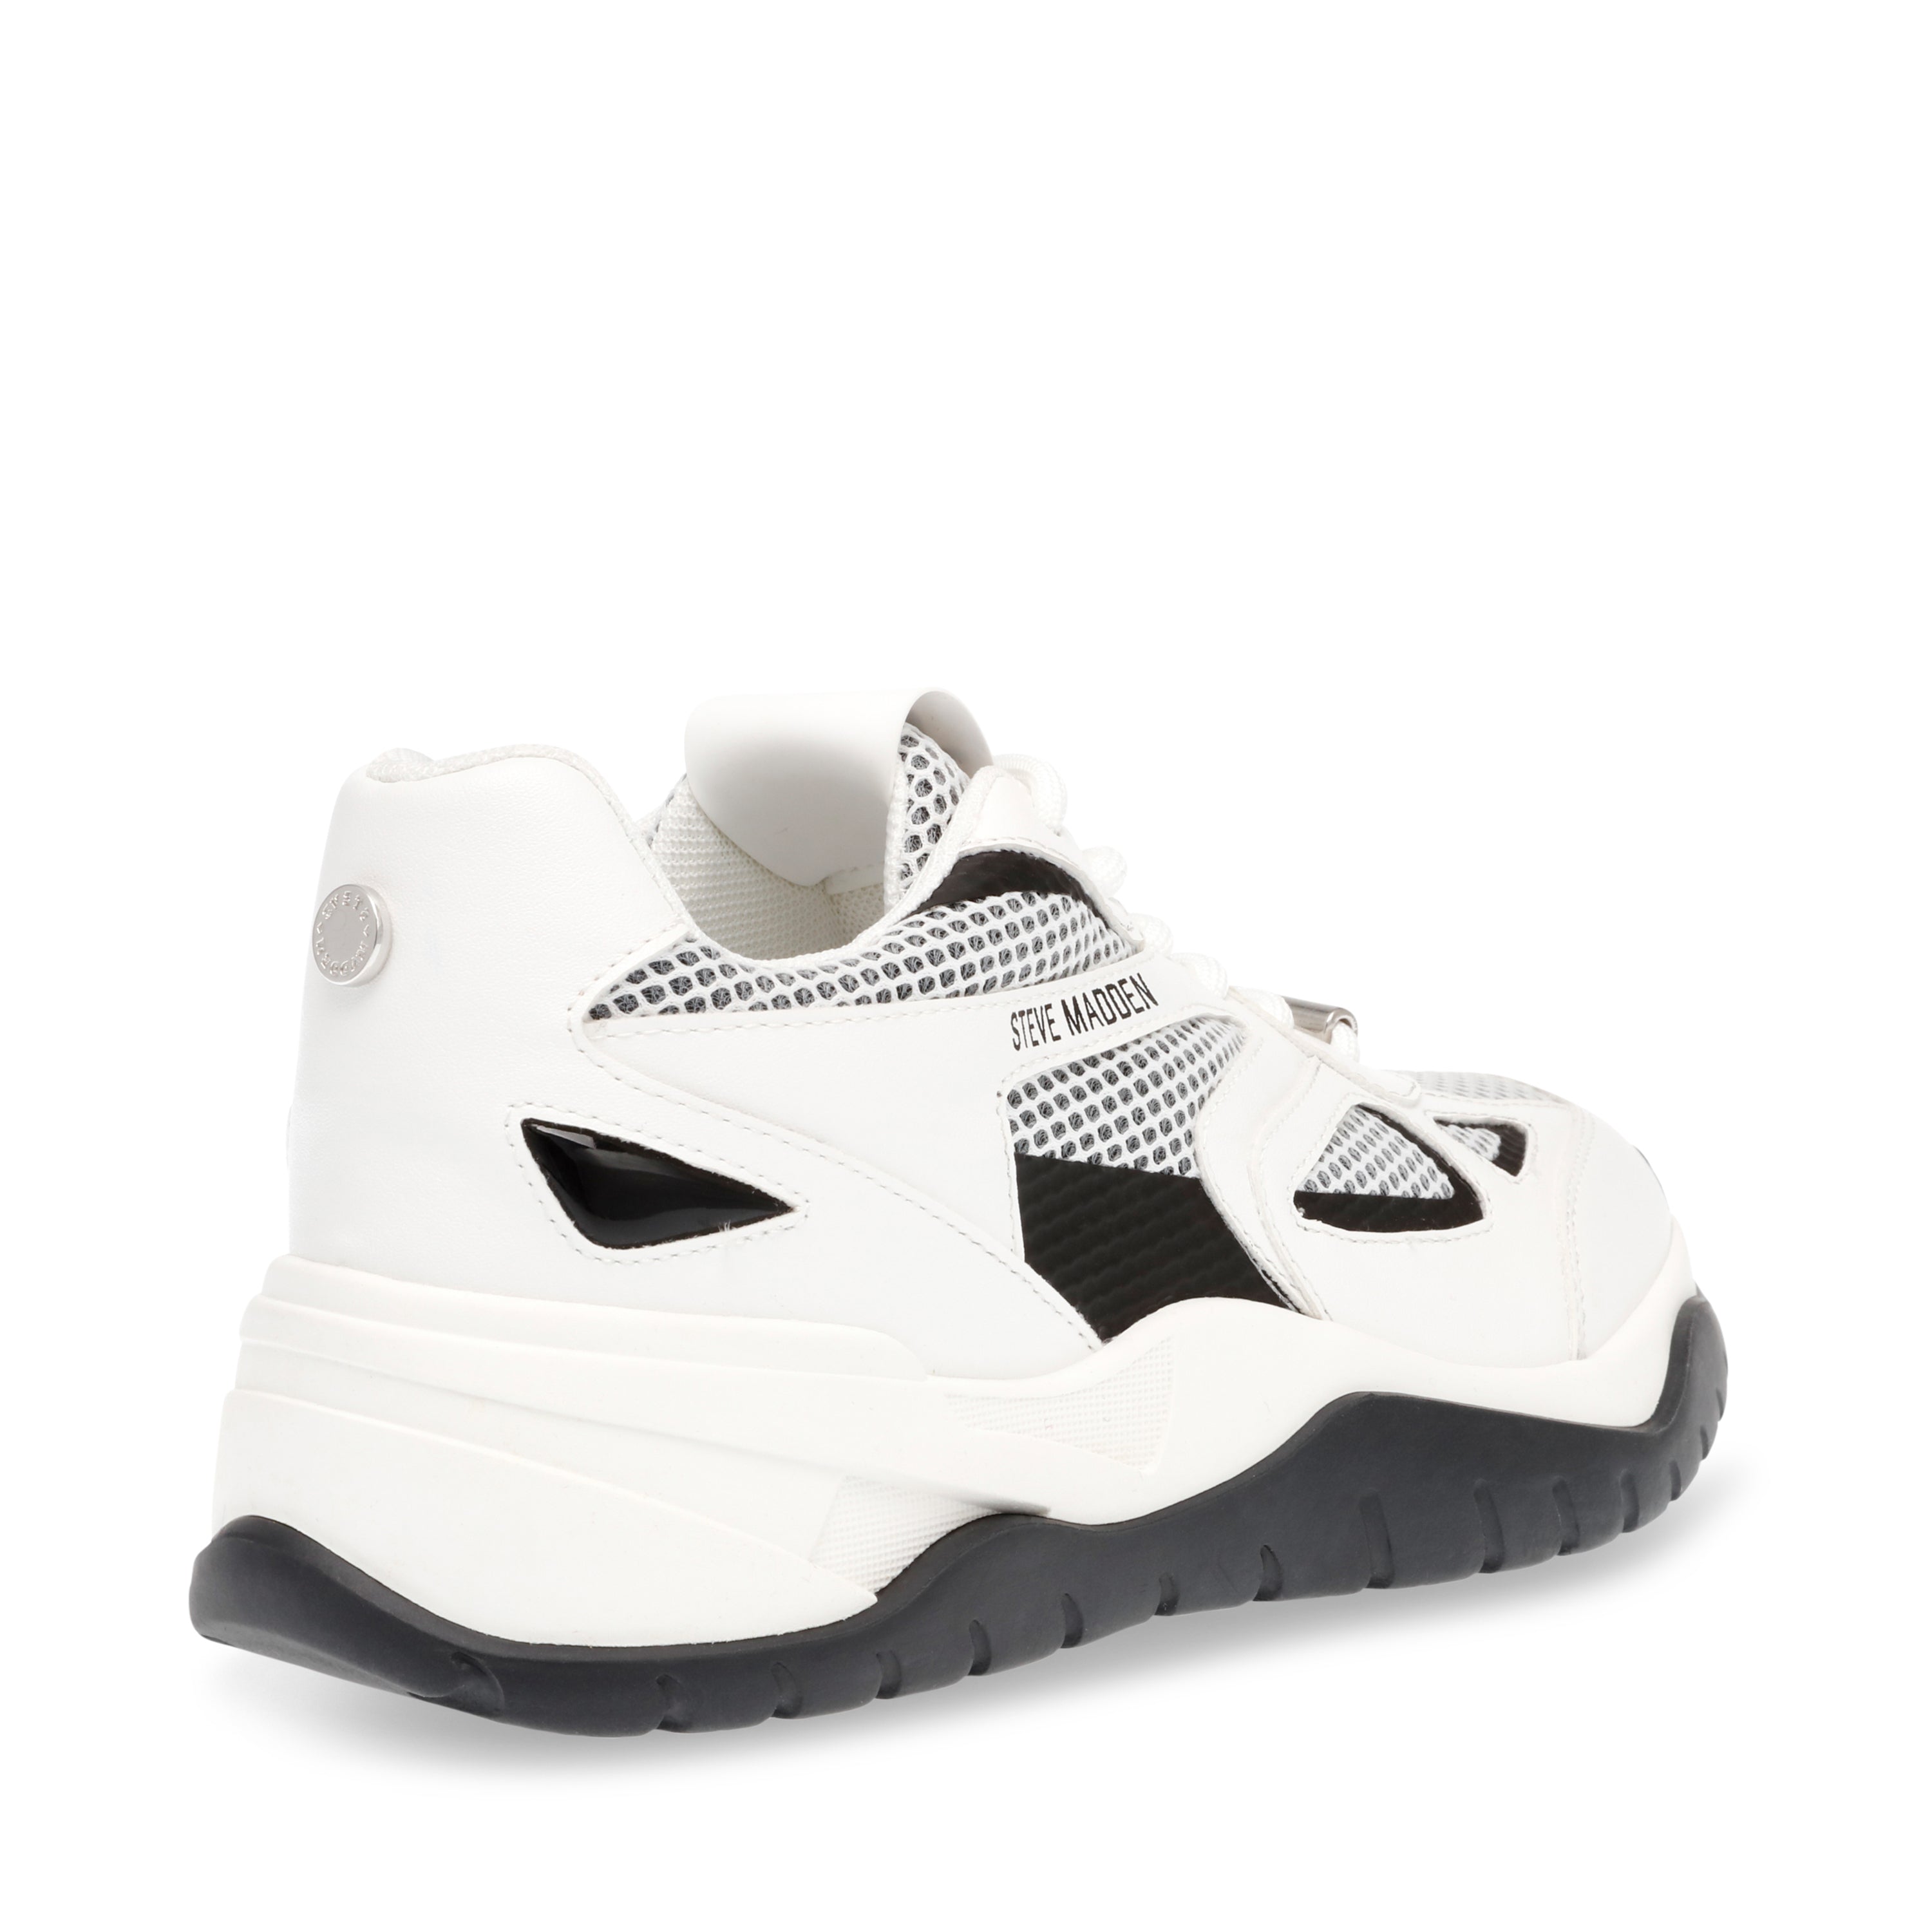 Aventura Sneaker Black/White- Hover Image